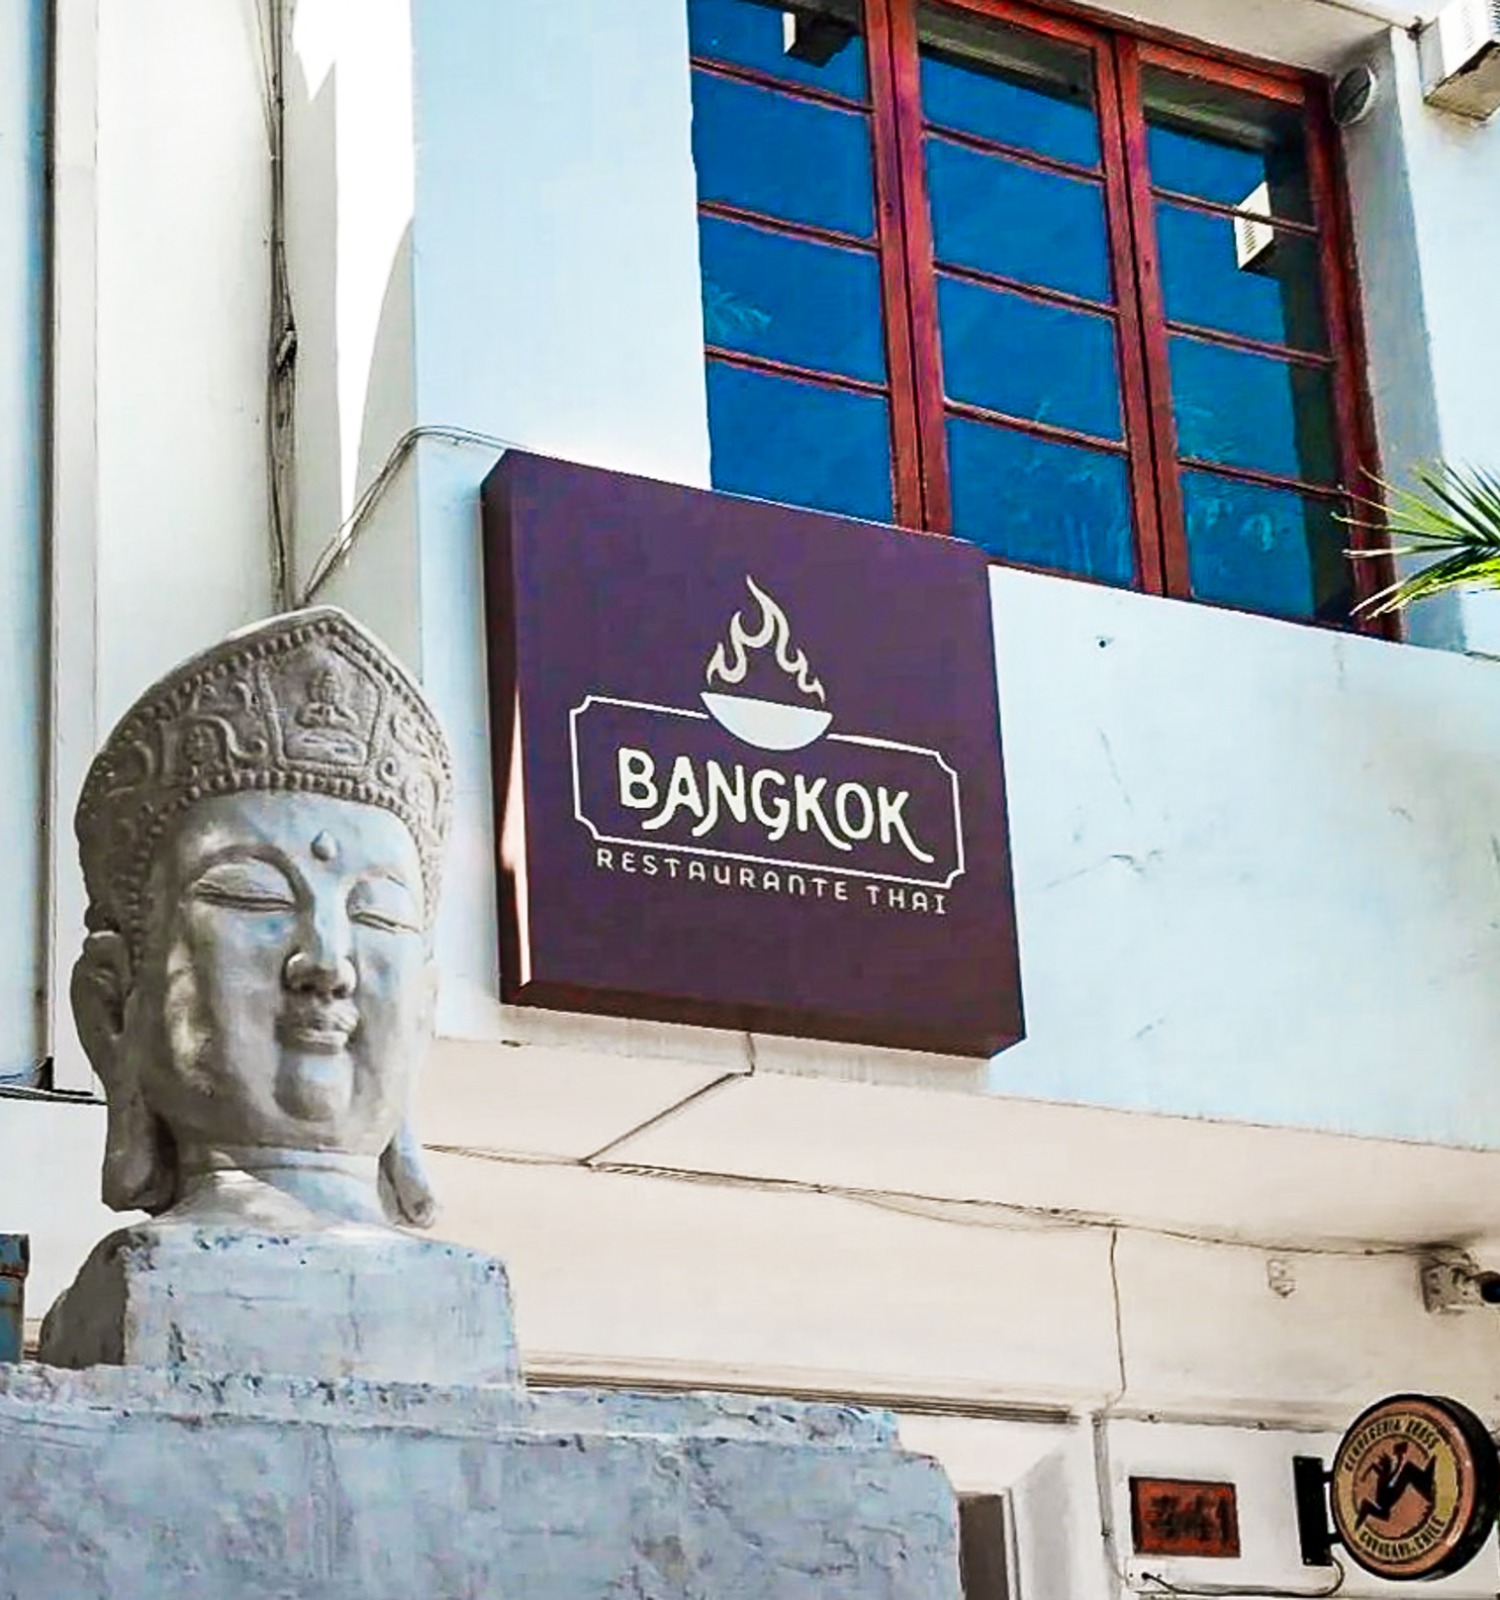 Bangkok Restaurante: Auténticos sabores tailandeses en el centro de Santiago